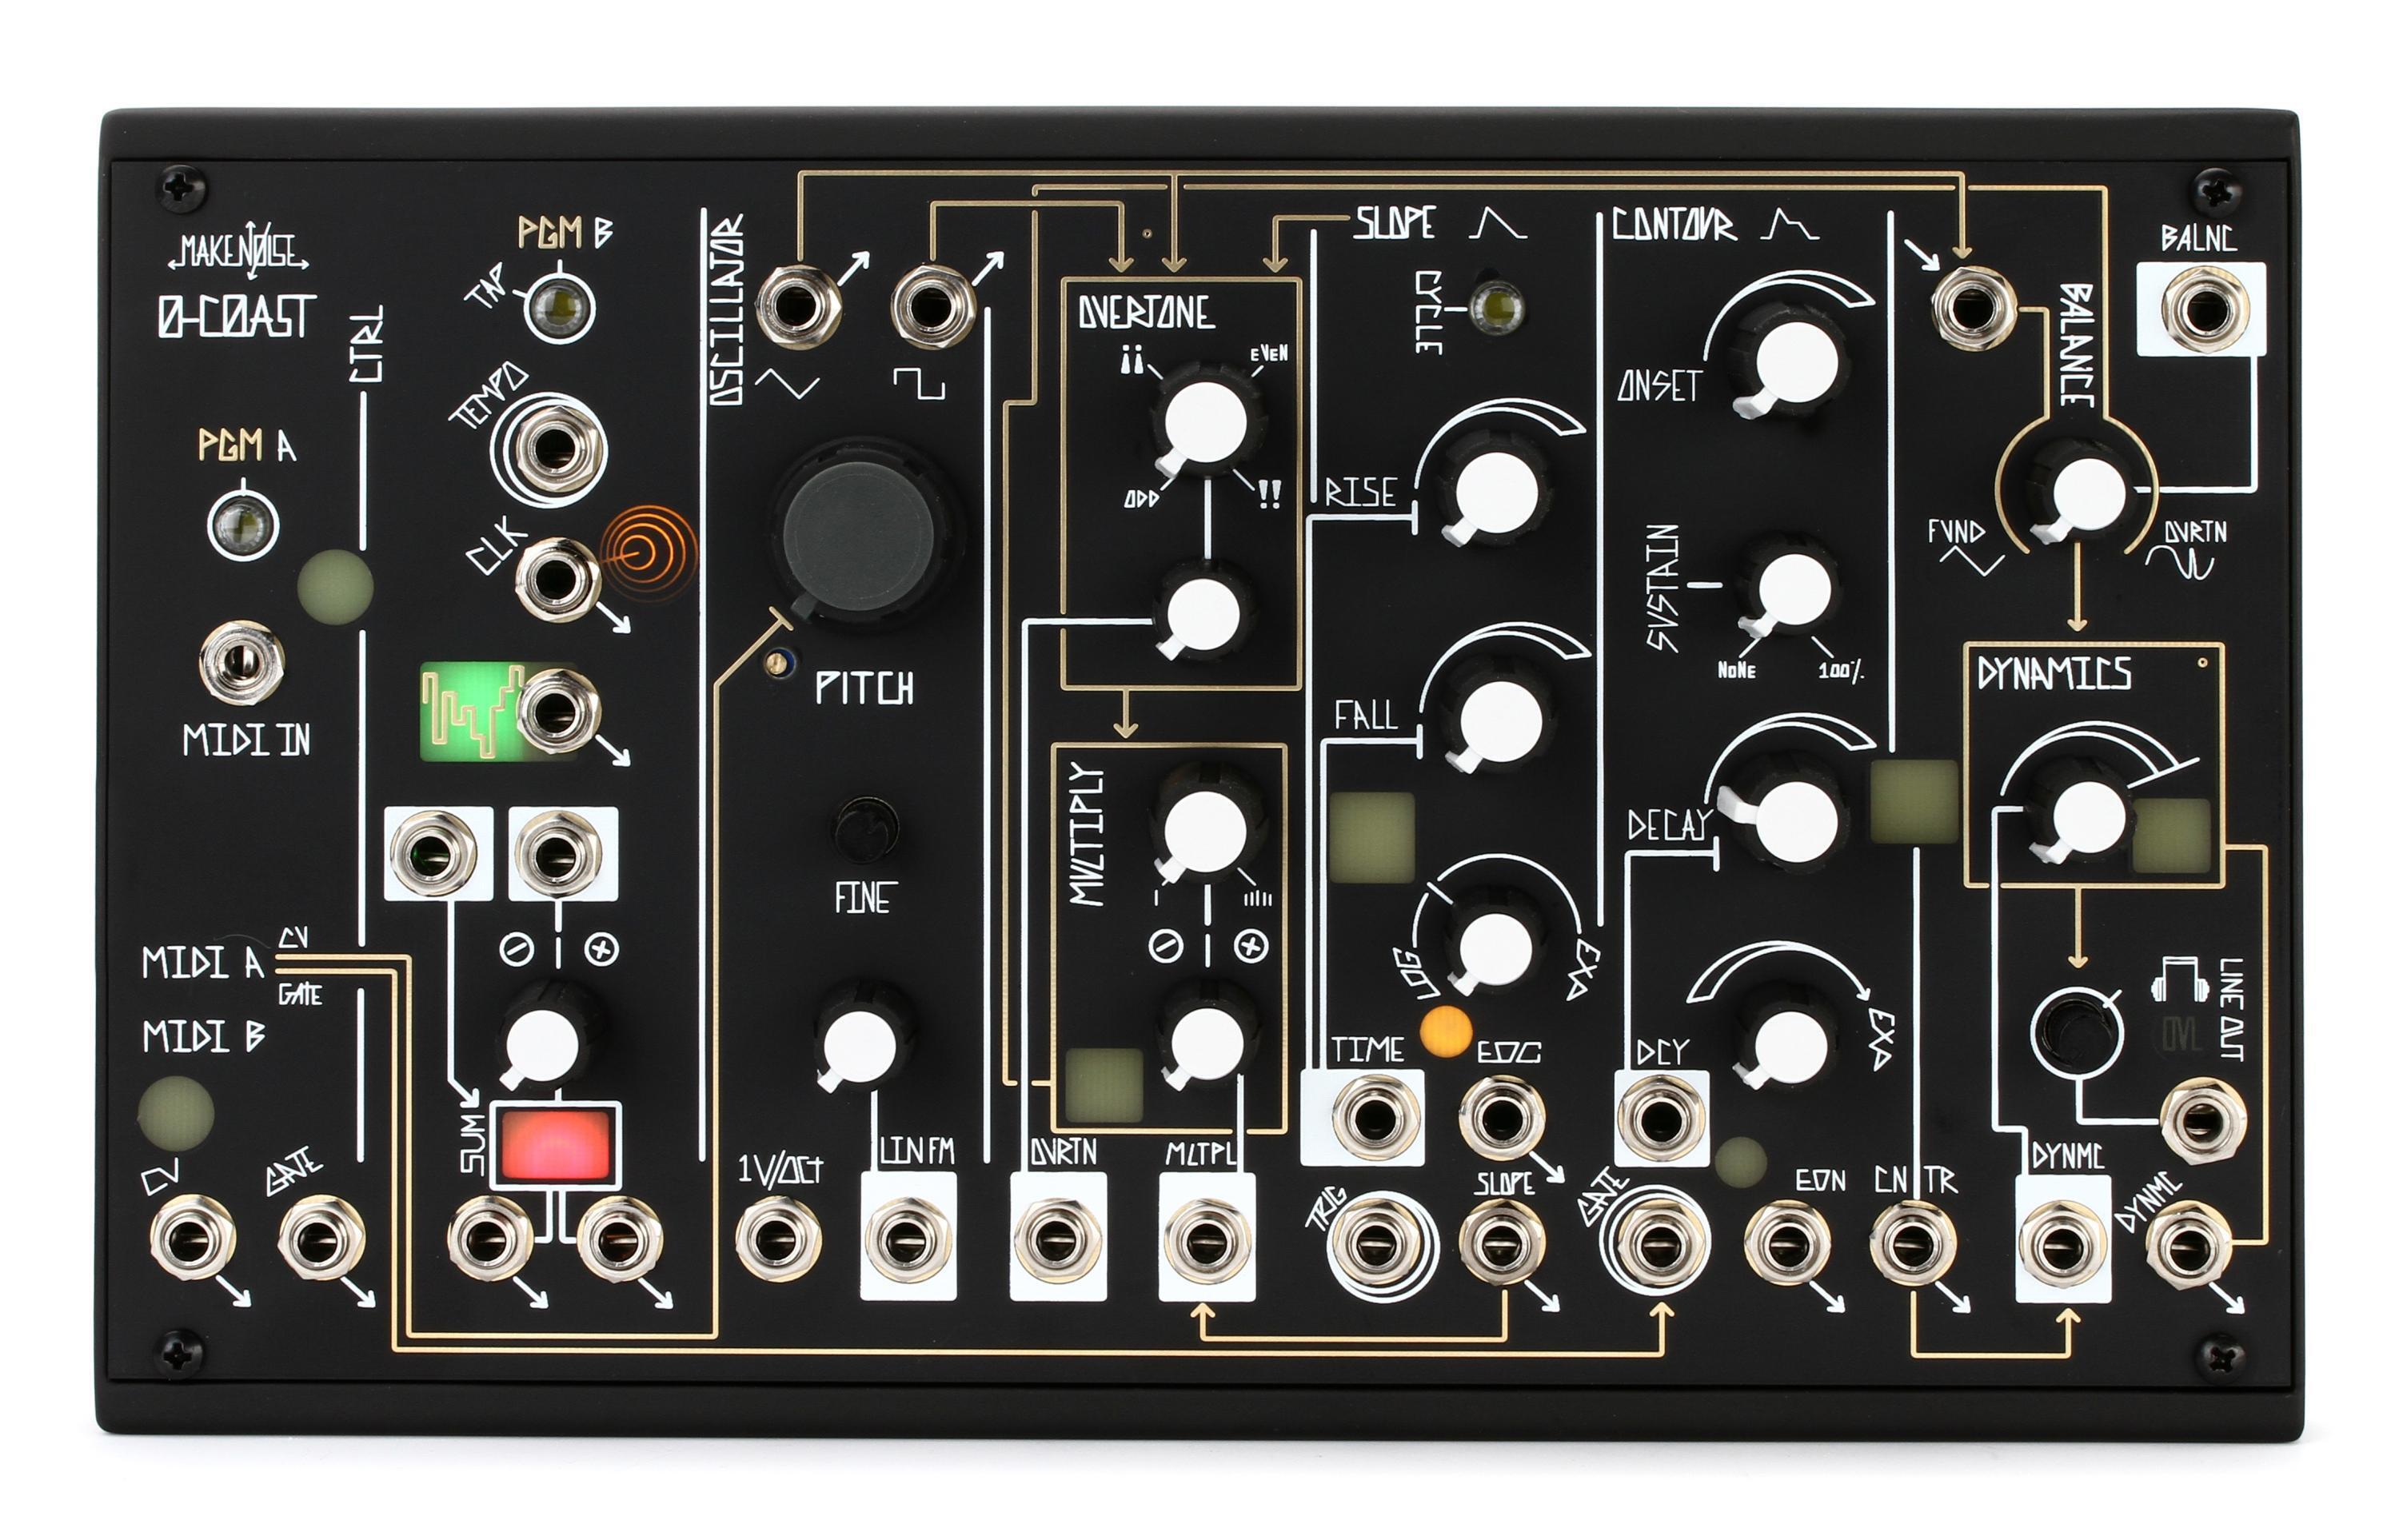 Make Noise 0-COAST Semi-modular Analog Desktop Synthesizer